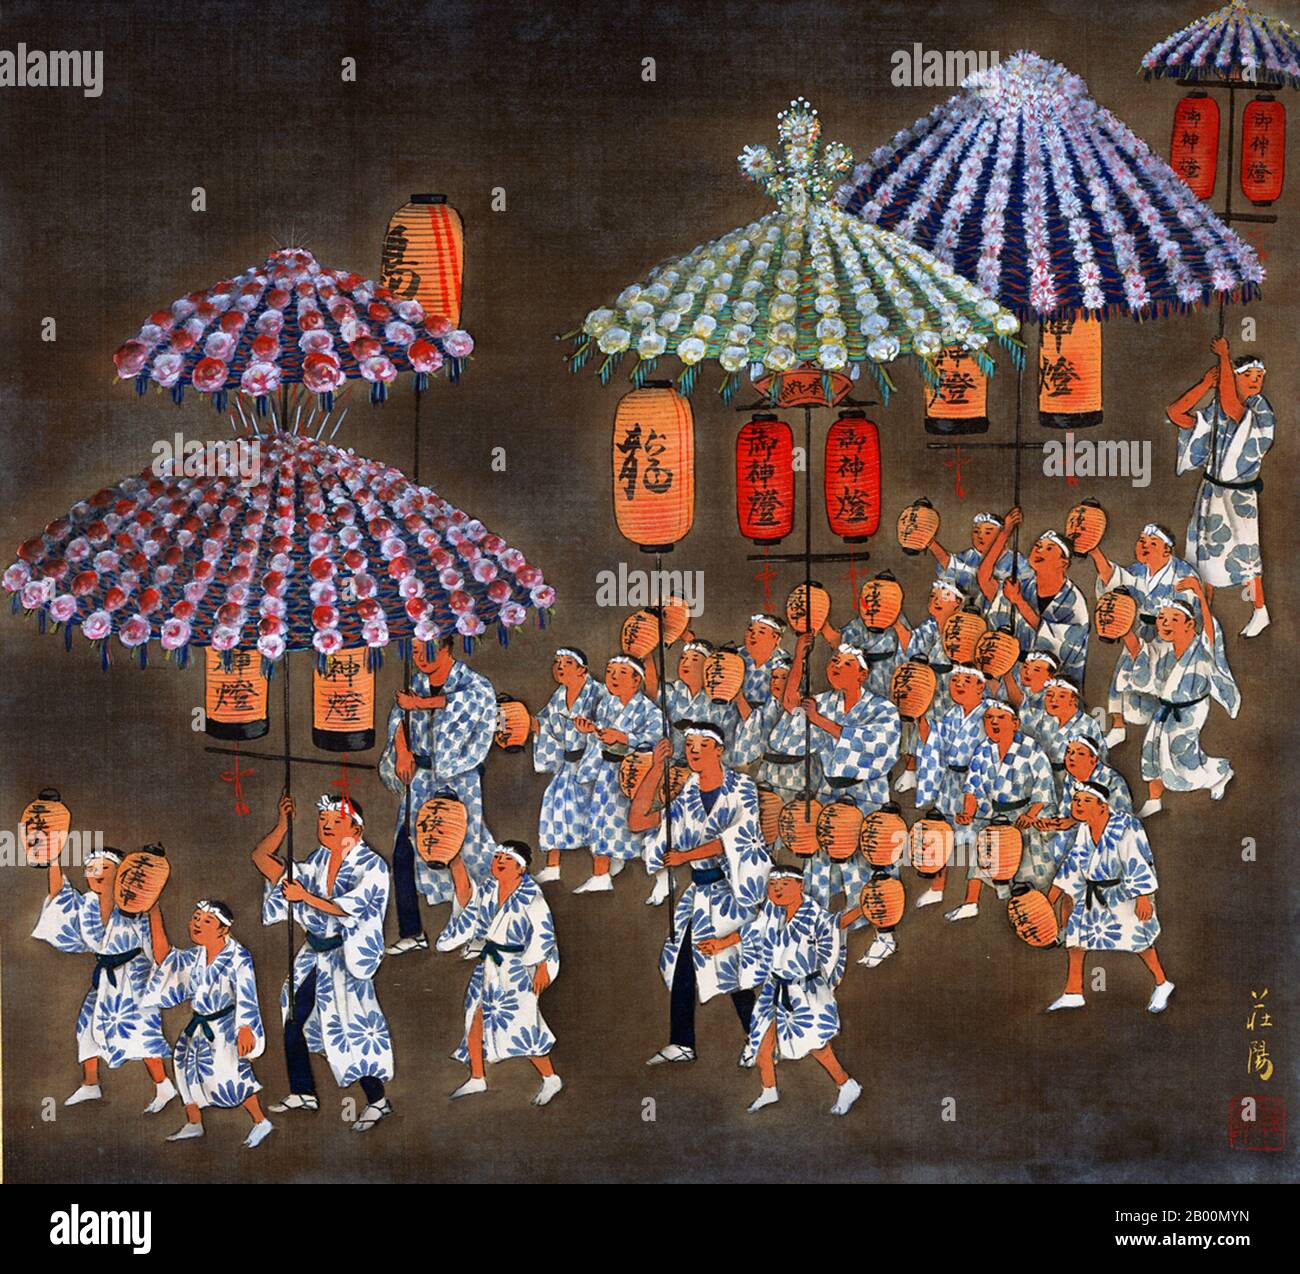 Japan: 'Traditionelle Festivals in Kyoto, Xiang Palace Festival - Ashikaga Era'. Aus dem Miyako Nenju Gyoji Gajo Album von Nakajima Soyo, 1928. Mit rund 2000 religiösen Stätten - 1600 buddhistischen Tempeln und 400 Shinto-Schreinen, sowie Palästen, Gärten und Architektur, Kyoto ist eine der am besten erhaltenen und kulturell bedeutendsten Städte in Japan. Zu den berühmtesten Tempeln gehören Kiyomizu-dera, ein herrlicher Holztempel, der von Säulen am Hang eines Berges unterstützt wird; Kinkaku-ji, der Tempel des Goldenen P Stockfoto